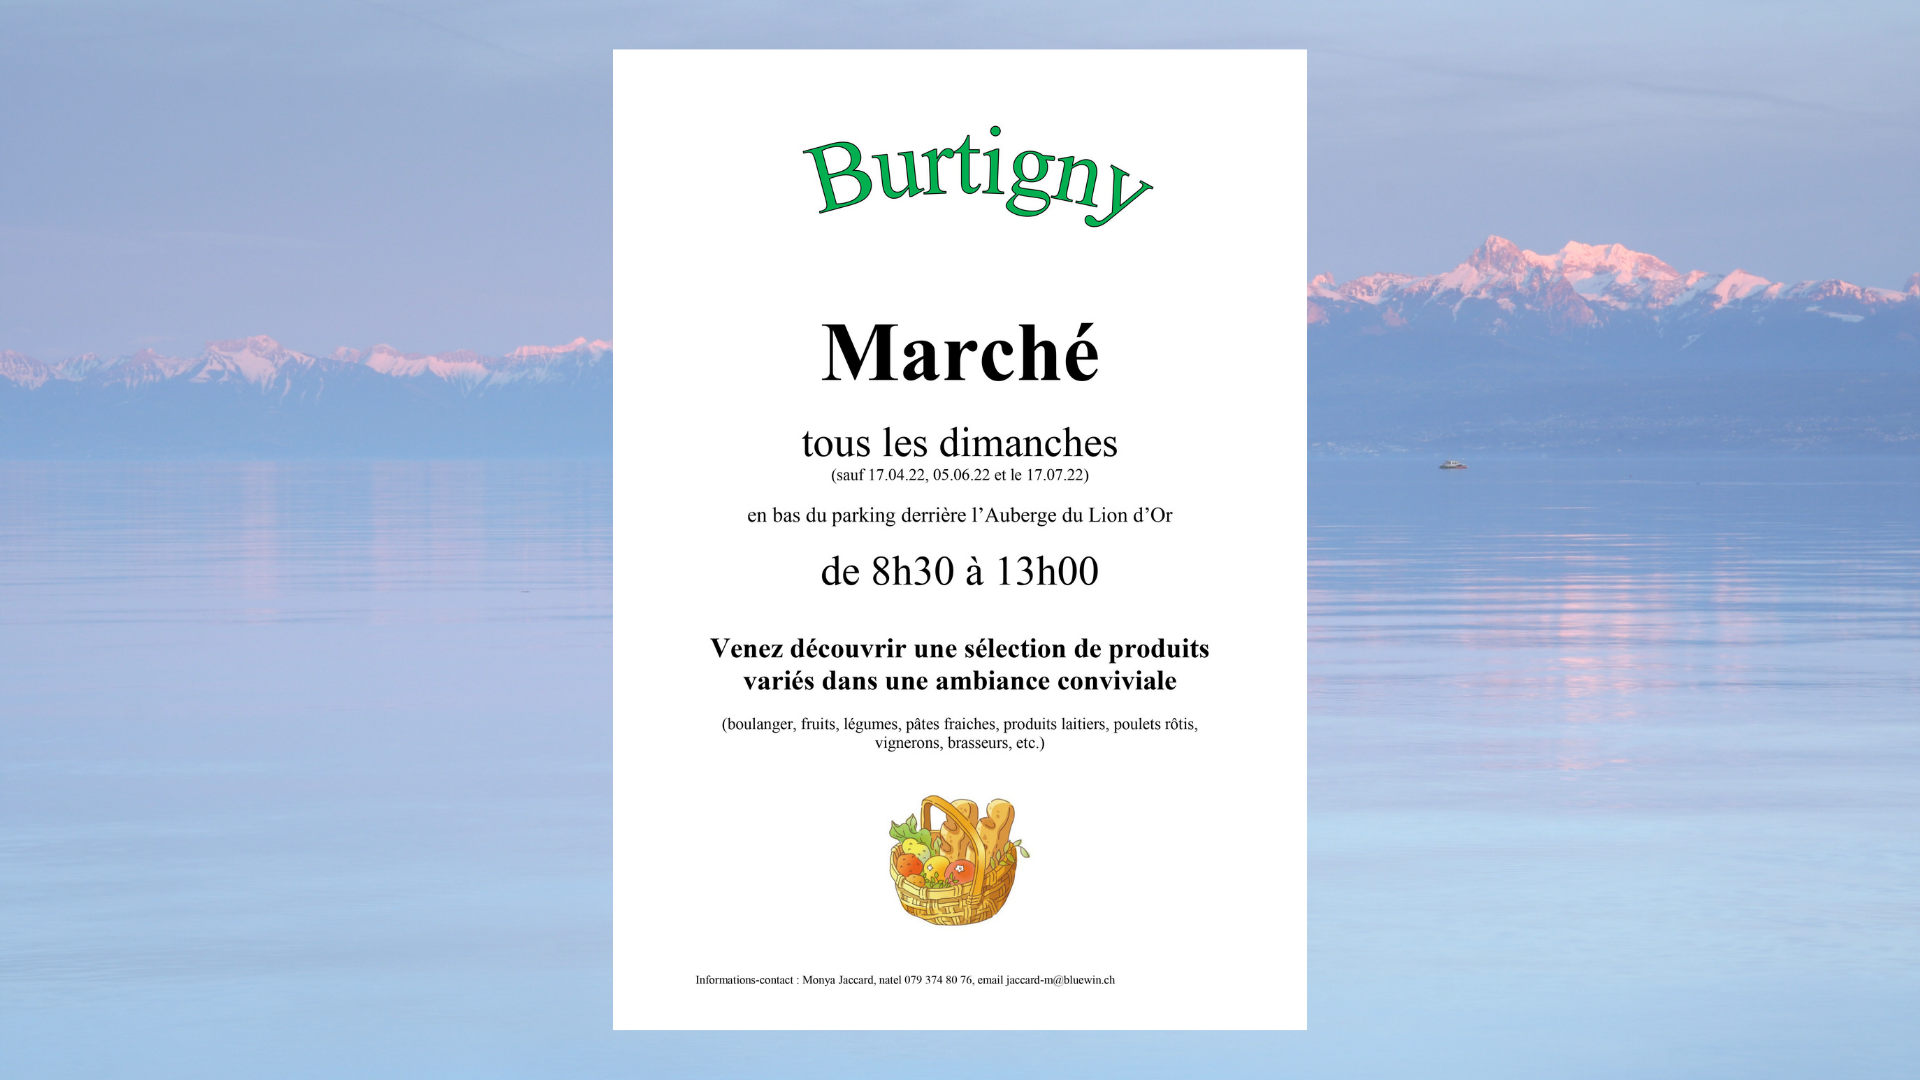 Marché De Burtigny